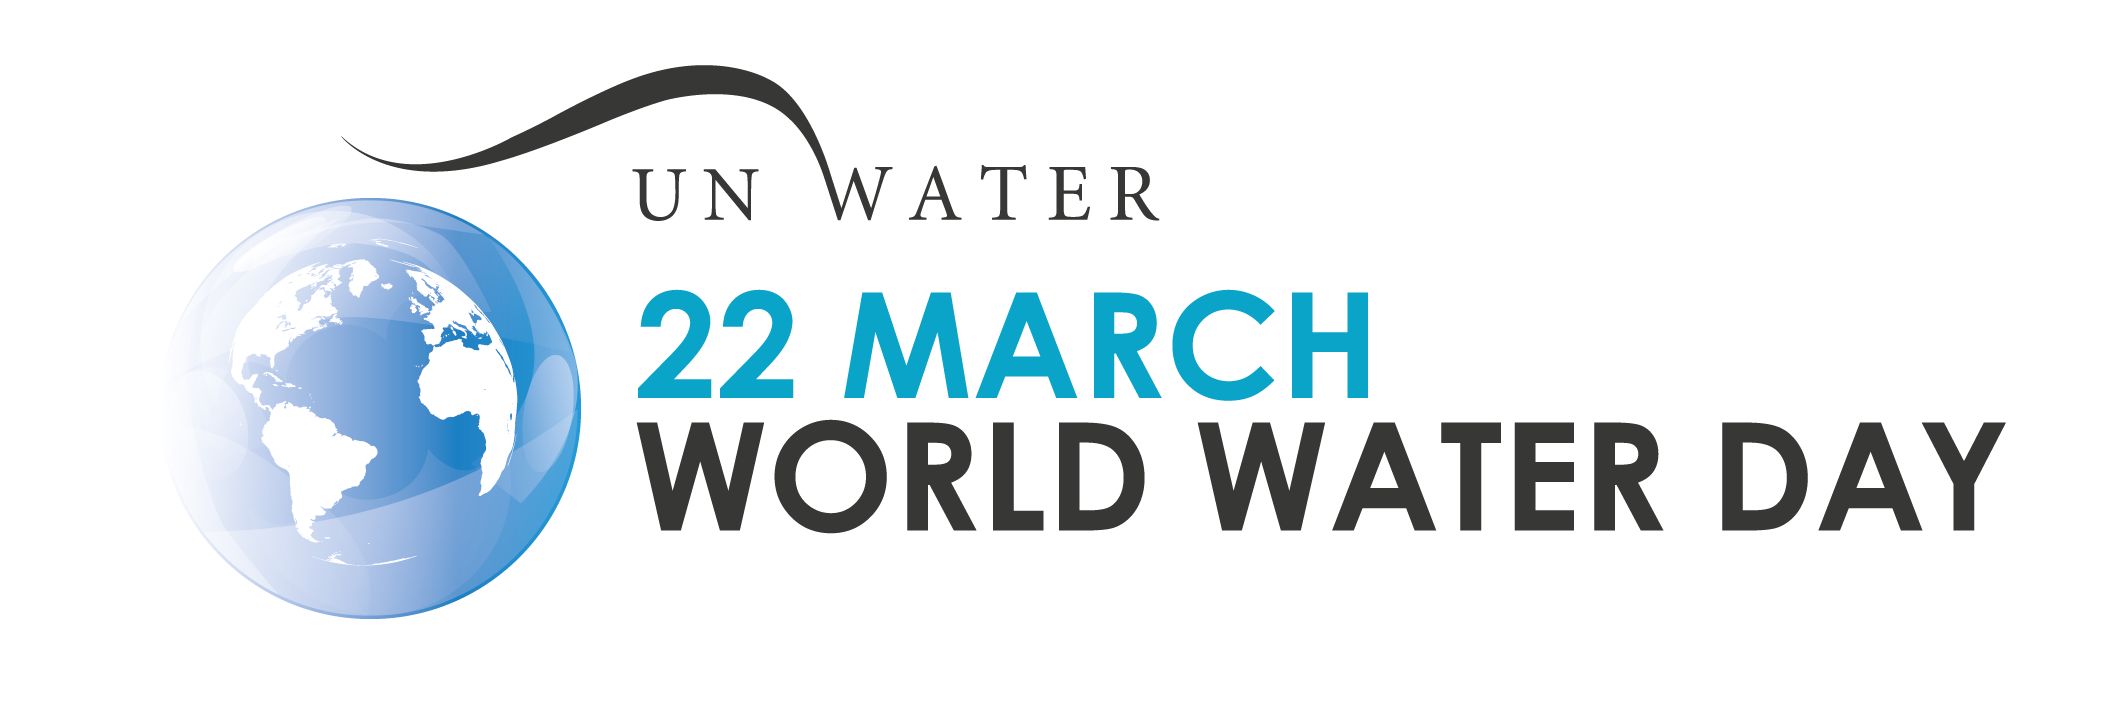 Giornata mondiale dell\'acqua 2020: annullata la premiazione di Photeau&videau